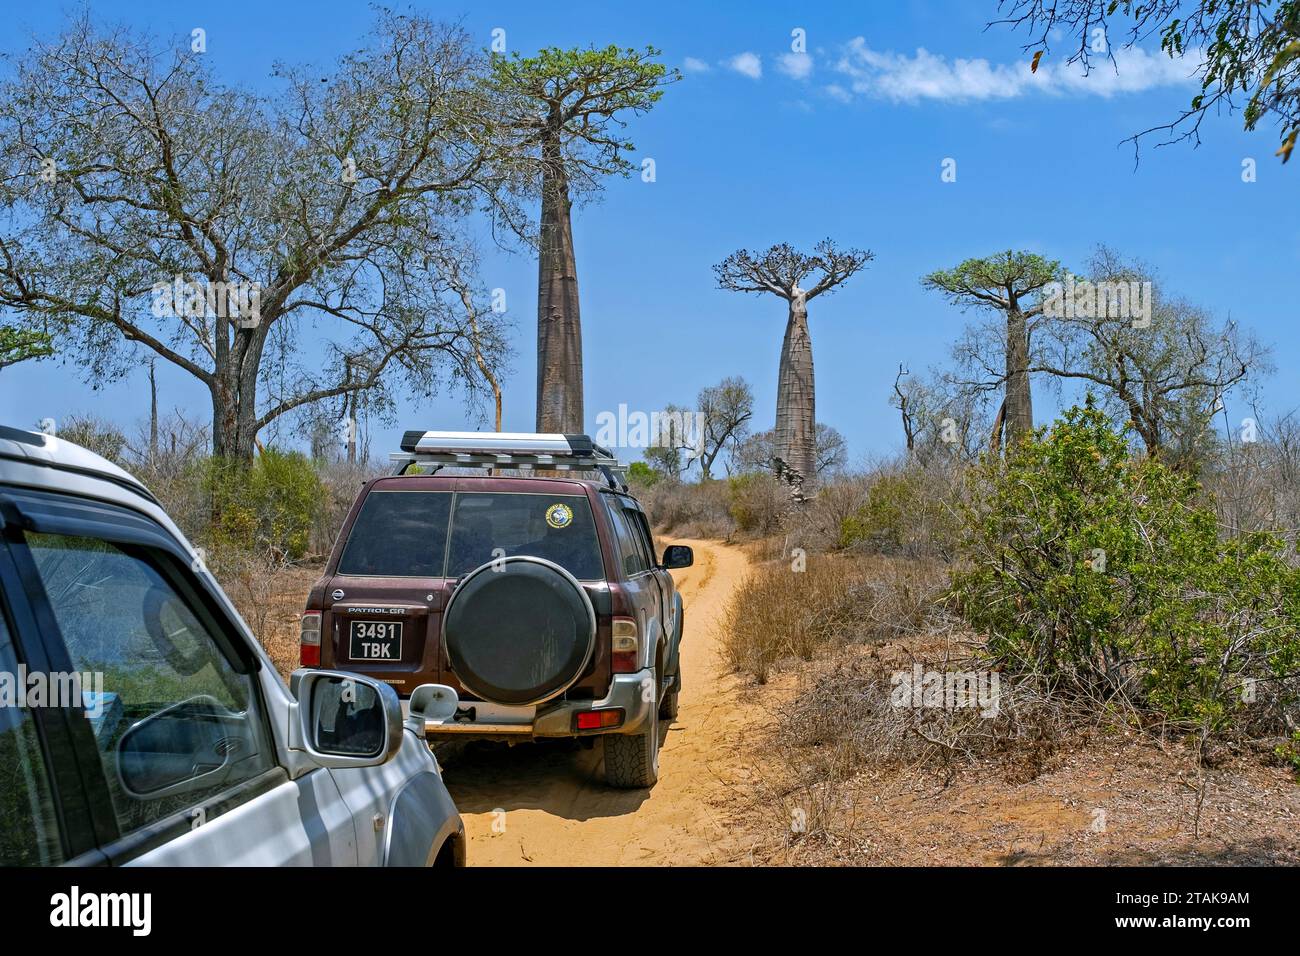 Geländefahrzeuge mit Allradantrieb fahren auf unbefestigten Straßen vorbei an Baobab-Bäumen im Stadtteil Morondava, Region Menabe, Madagaskar, Afrika Stockfoto